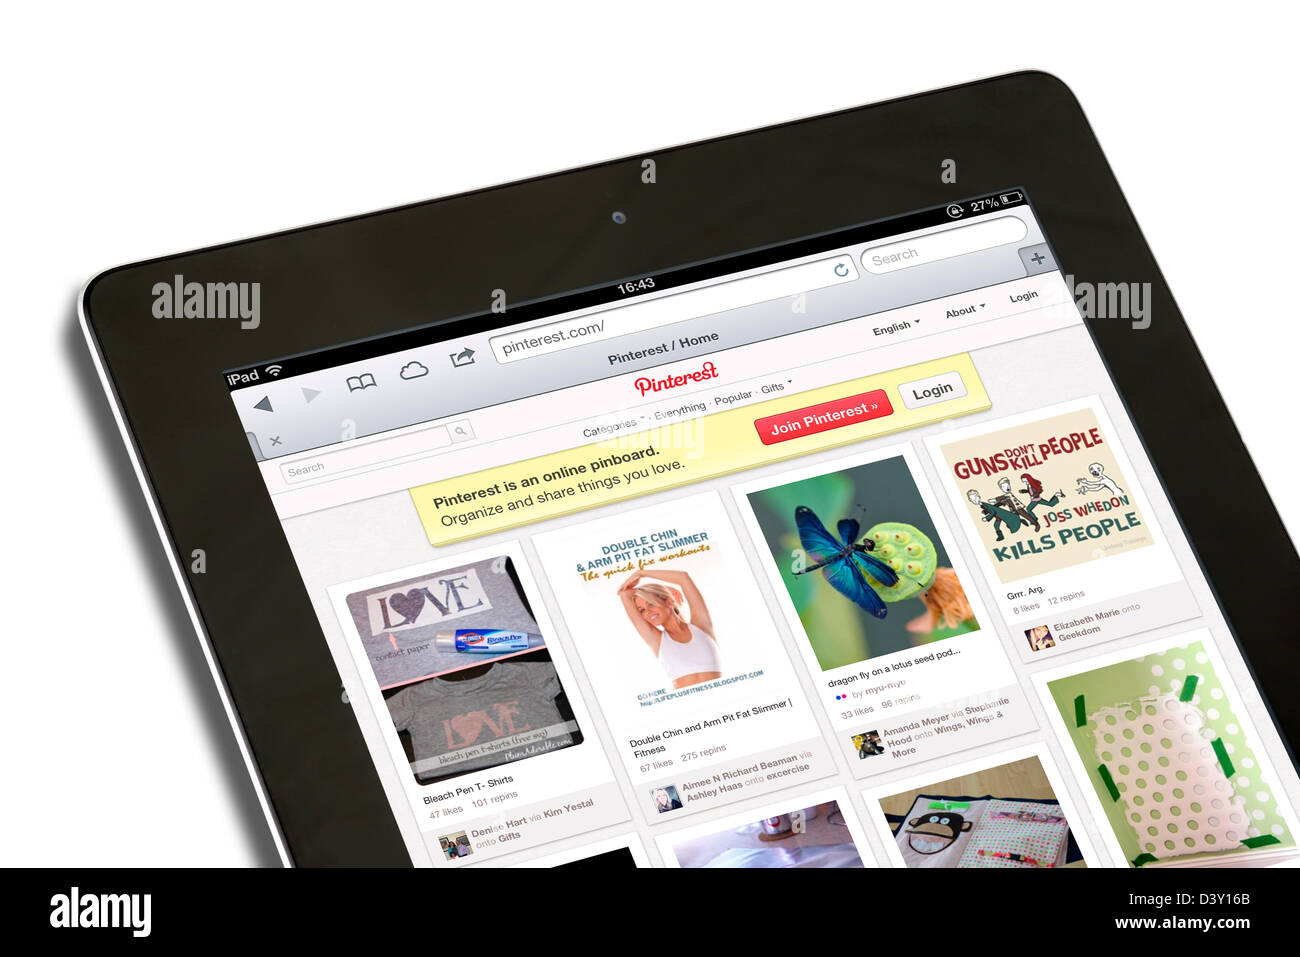 Pinterest, die Foto-sharing-Website, auf eine 4. Generation iPad angesehen Stockfoto